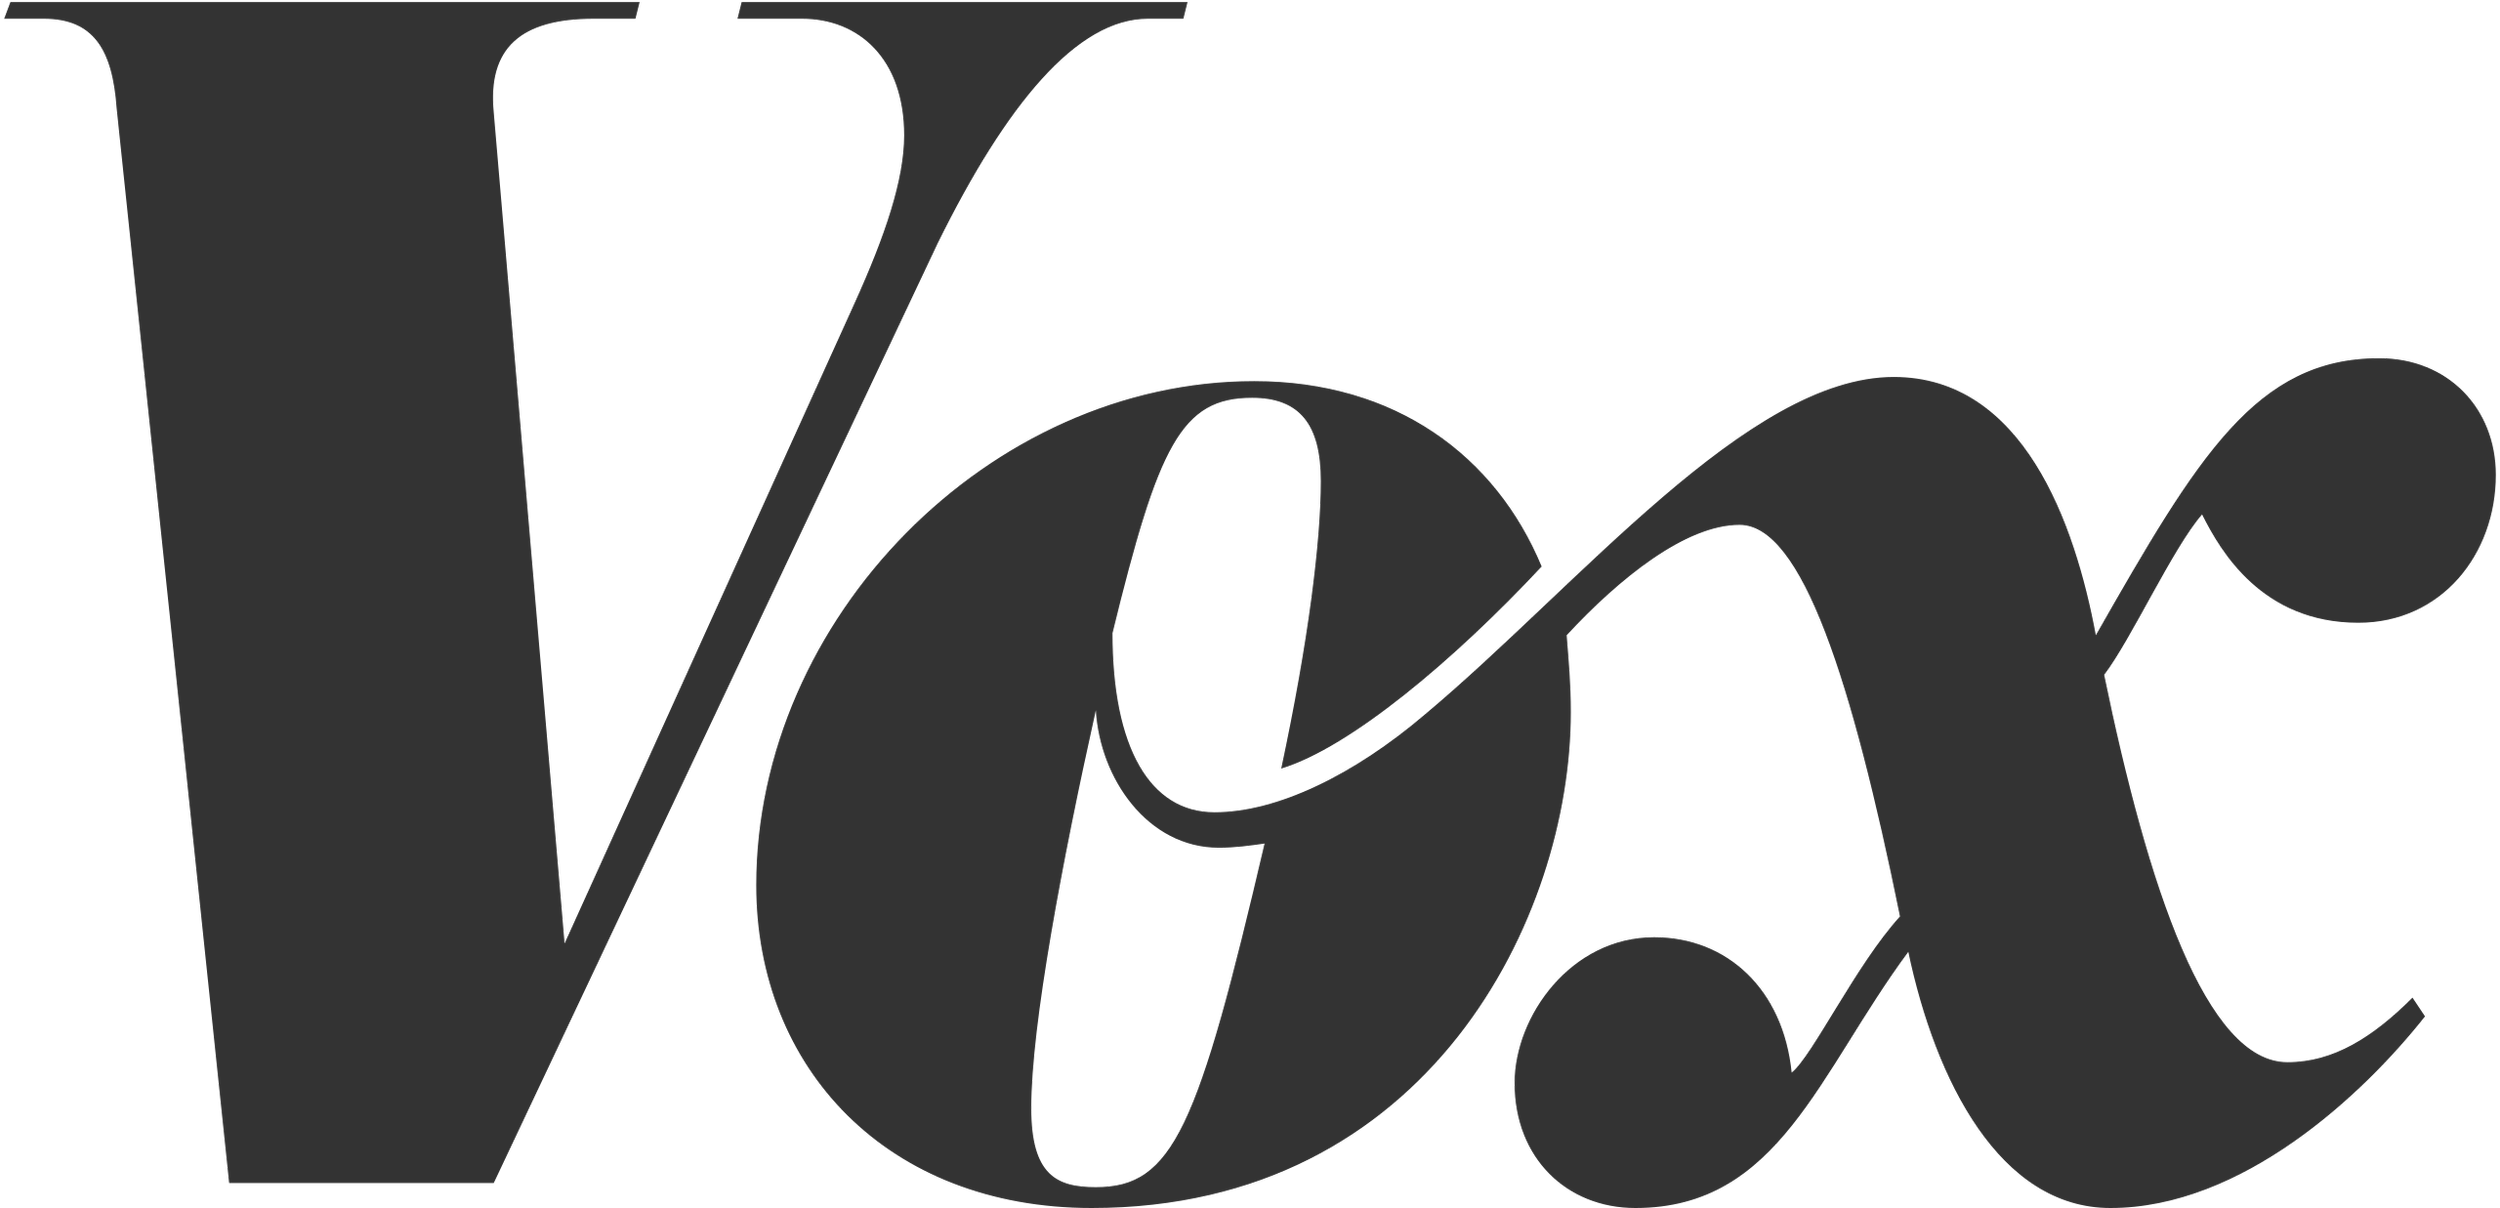 2560px-Vox_logo.svg.png